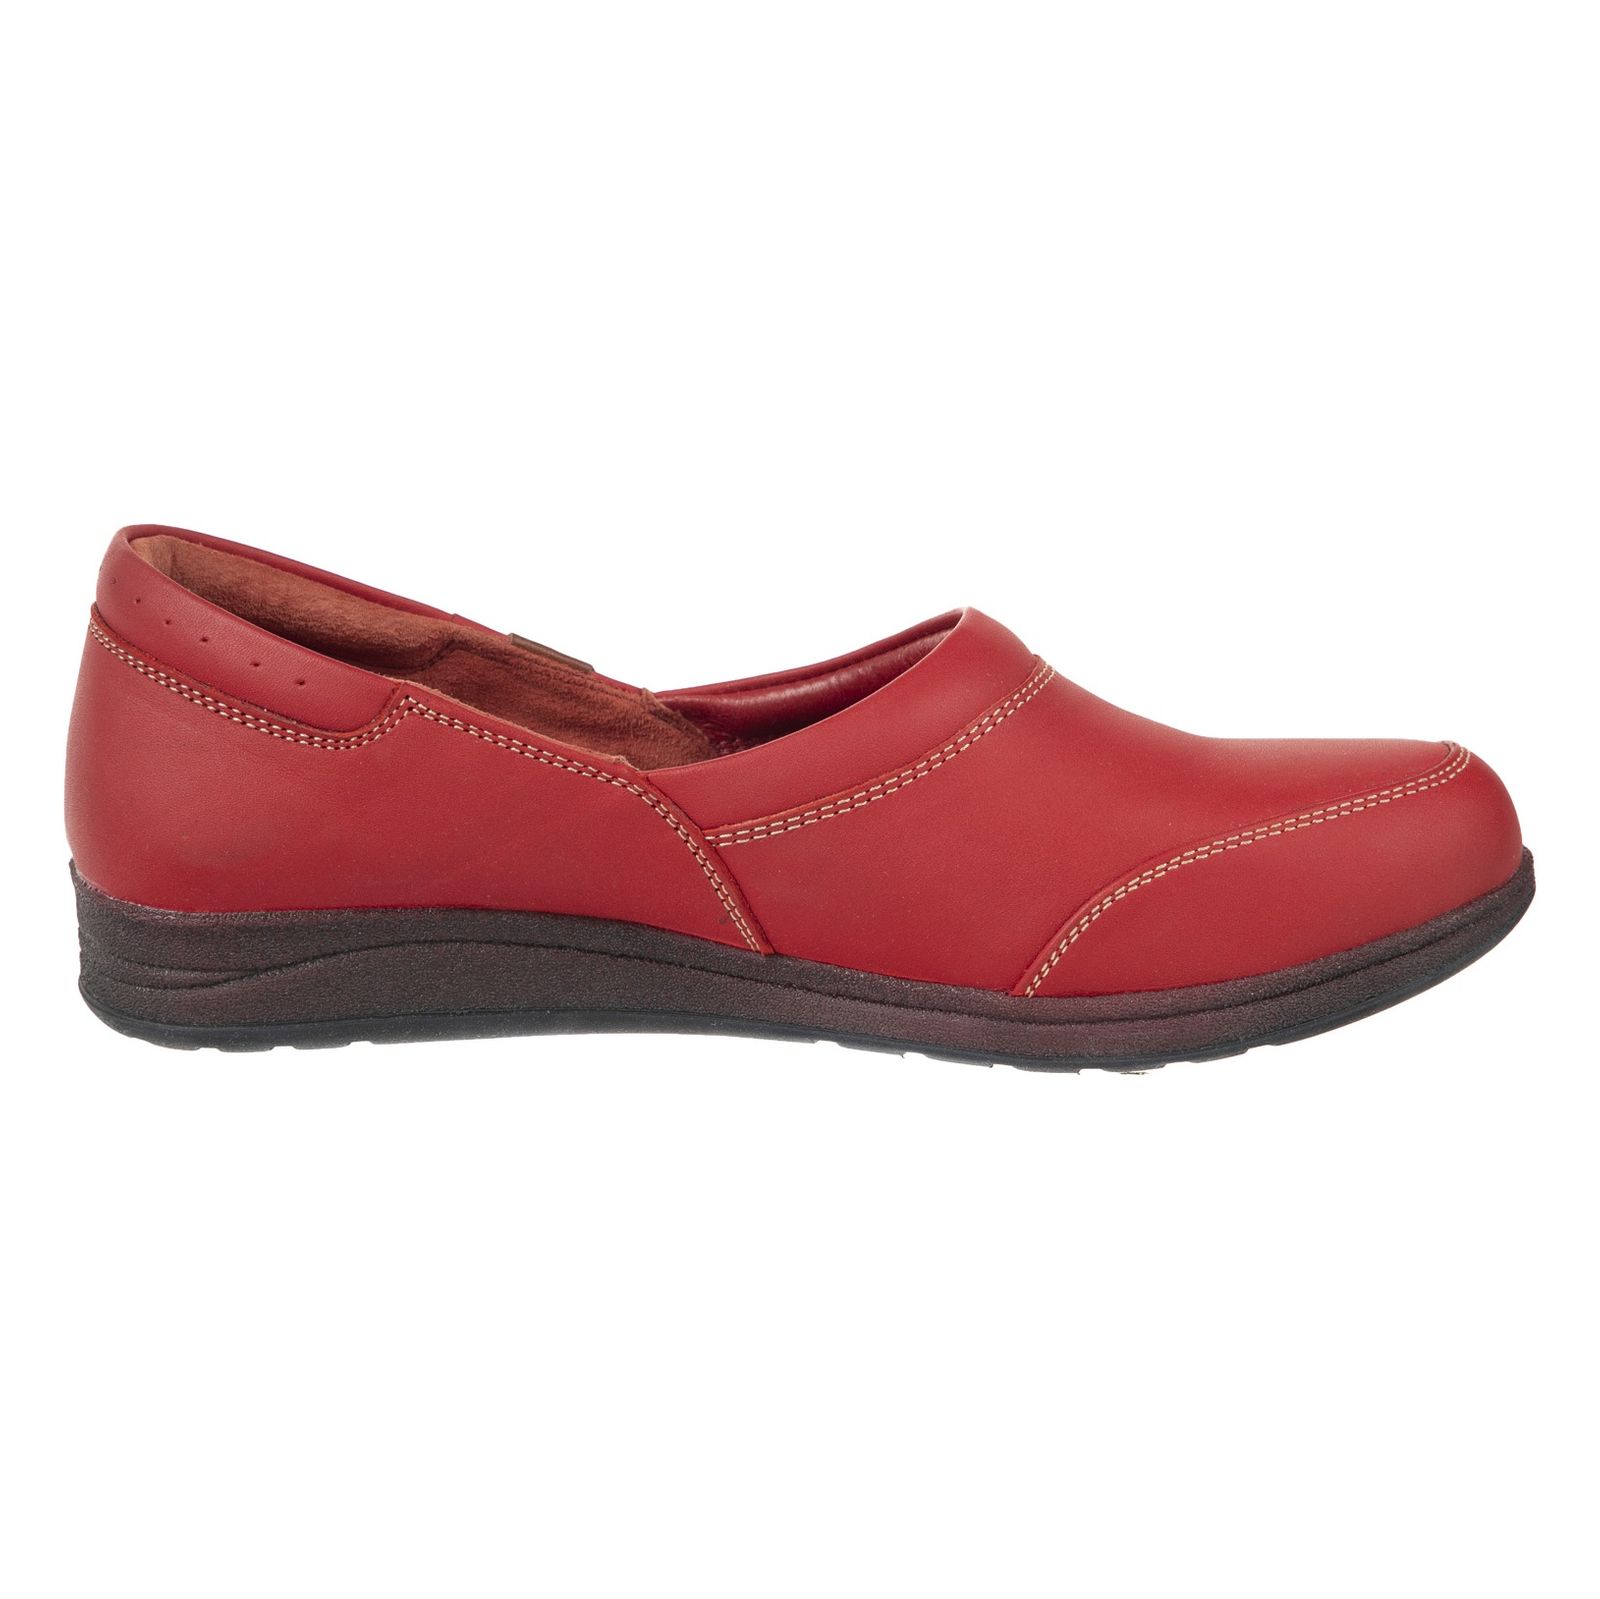 کفش روزمره زنانه ریمکس مدل 5181B500-102 - قرمز - 5